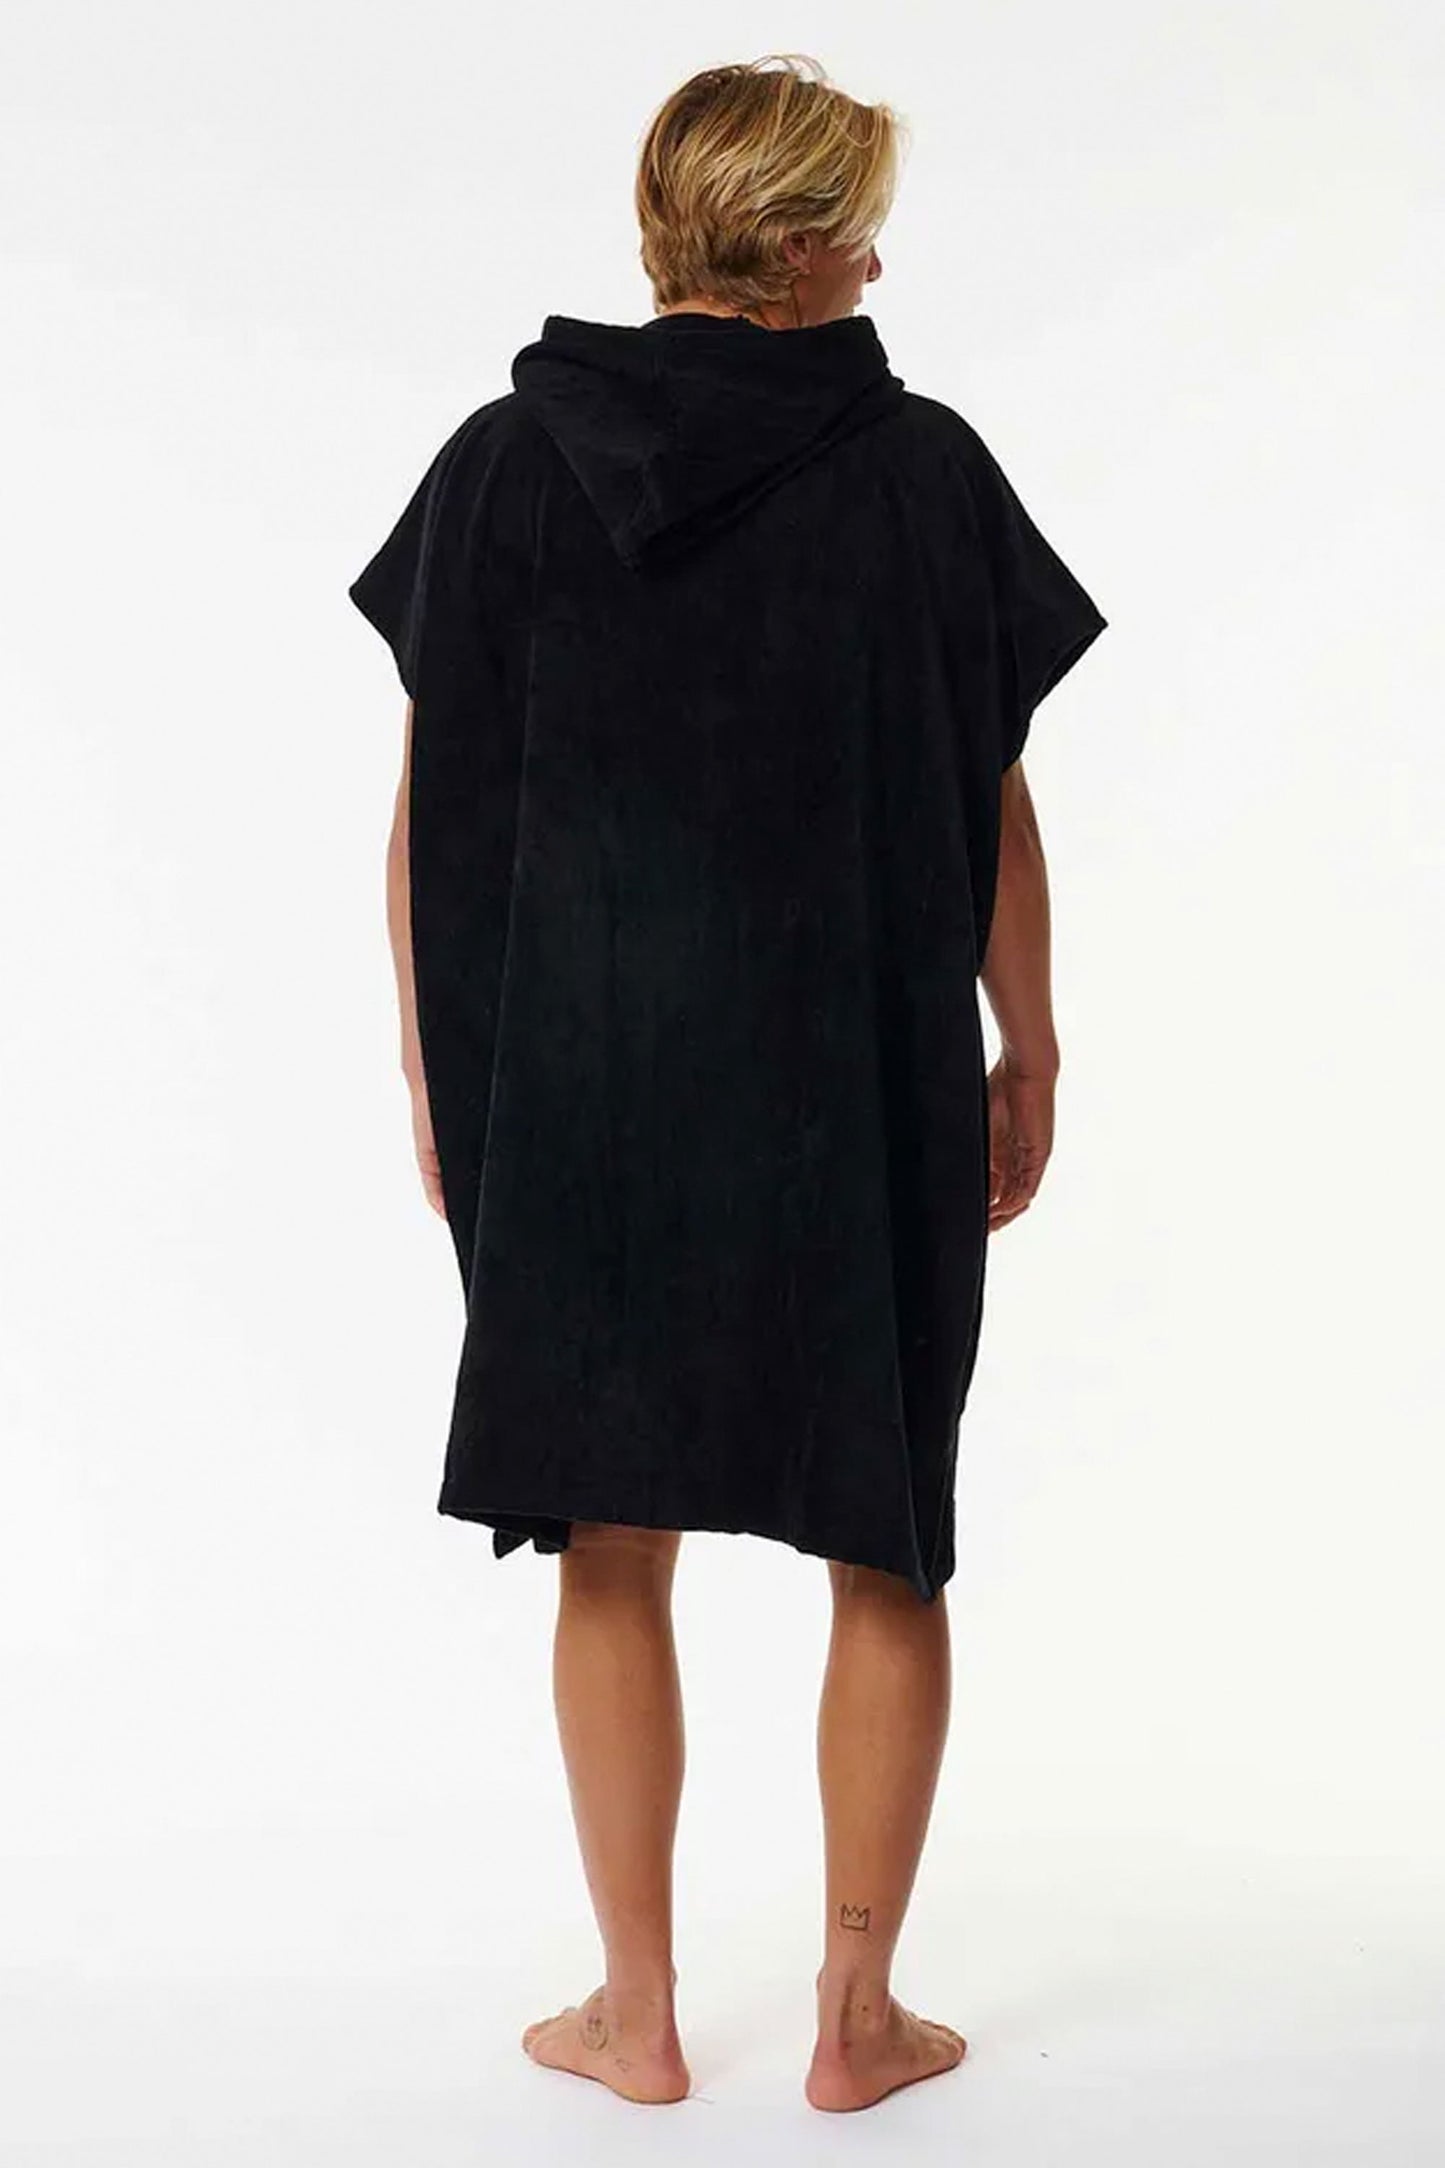 Pukas-Surf-Shop-Poncho-man-logo-hooded-black